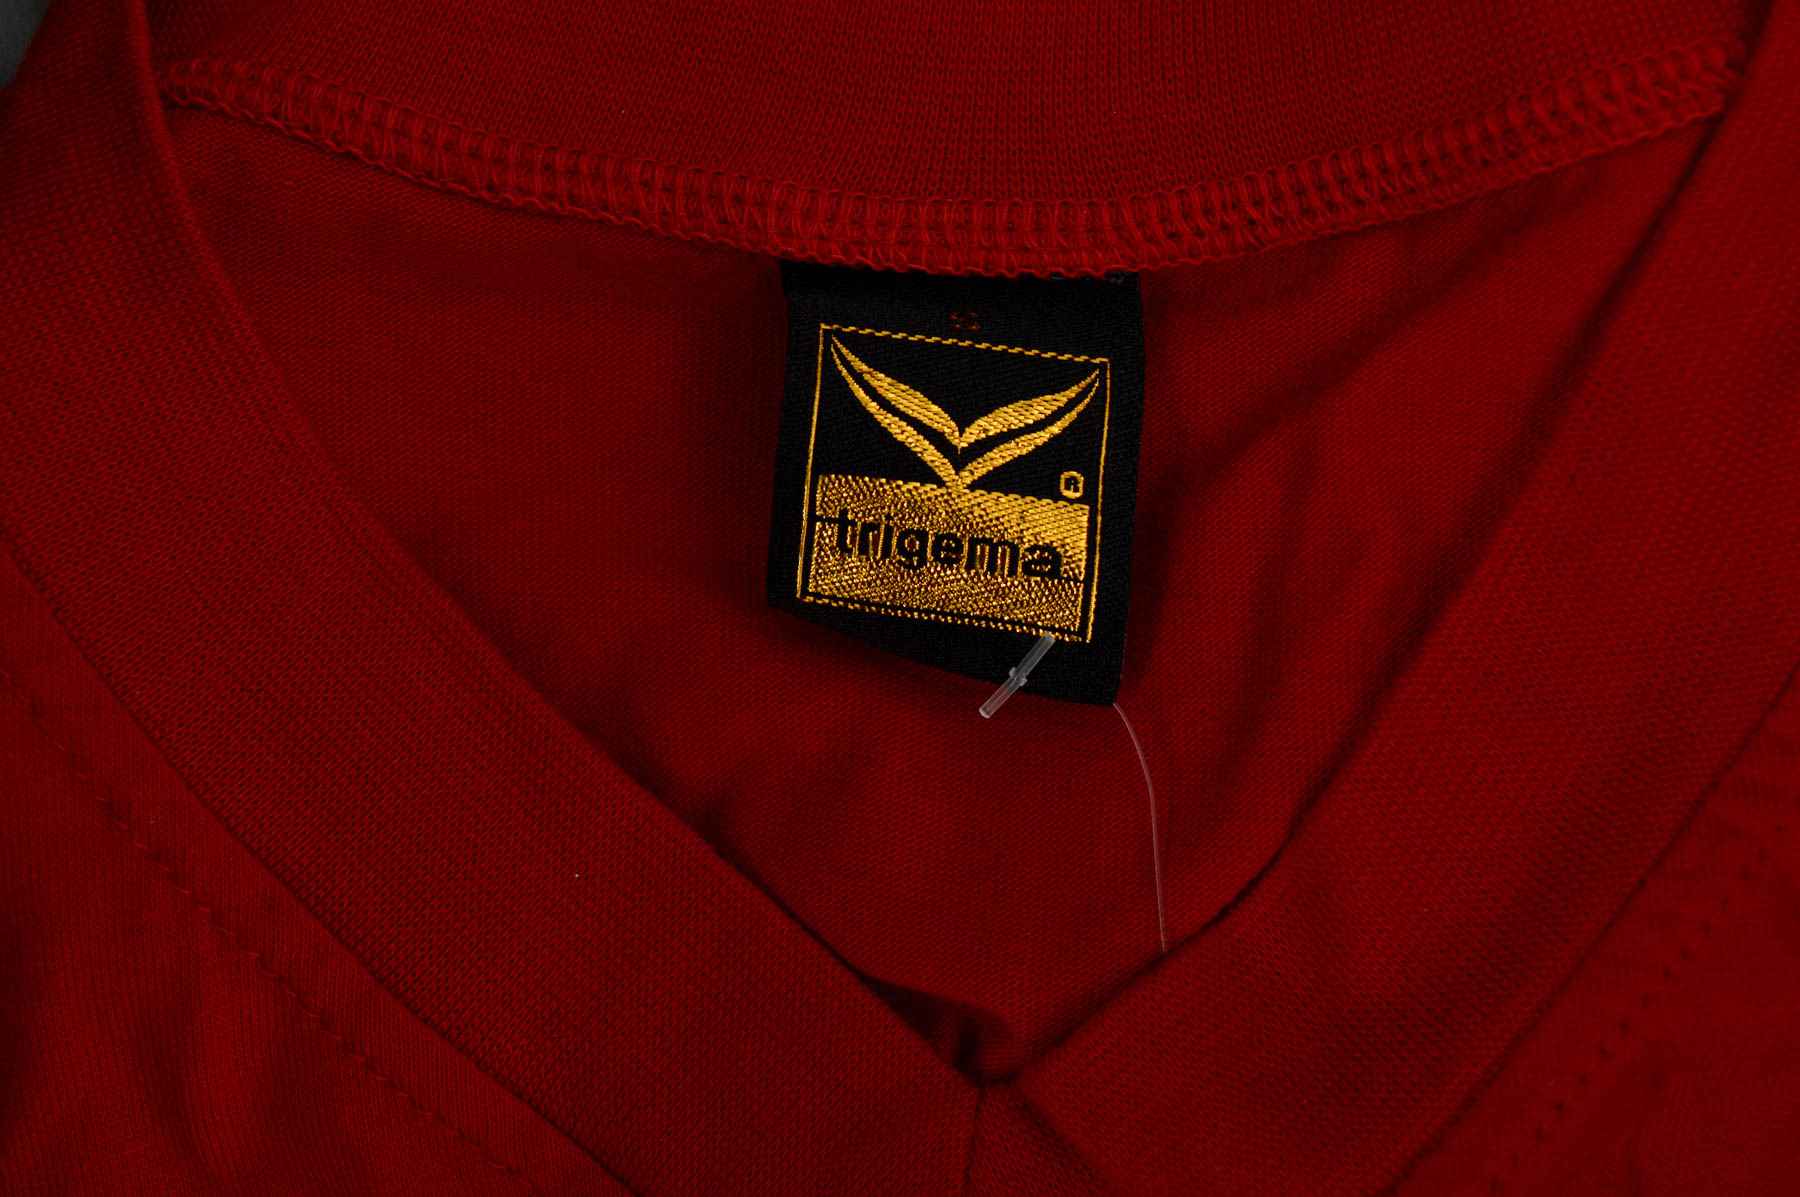 Men's T-shirt - Trigema - 2